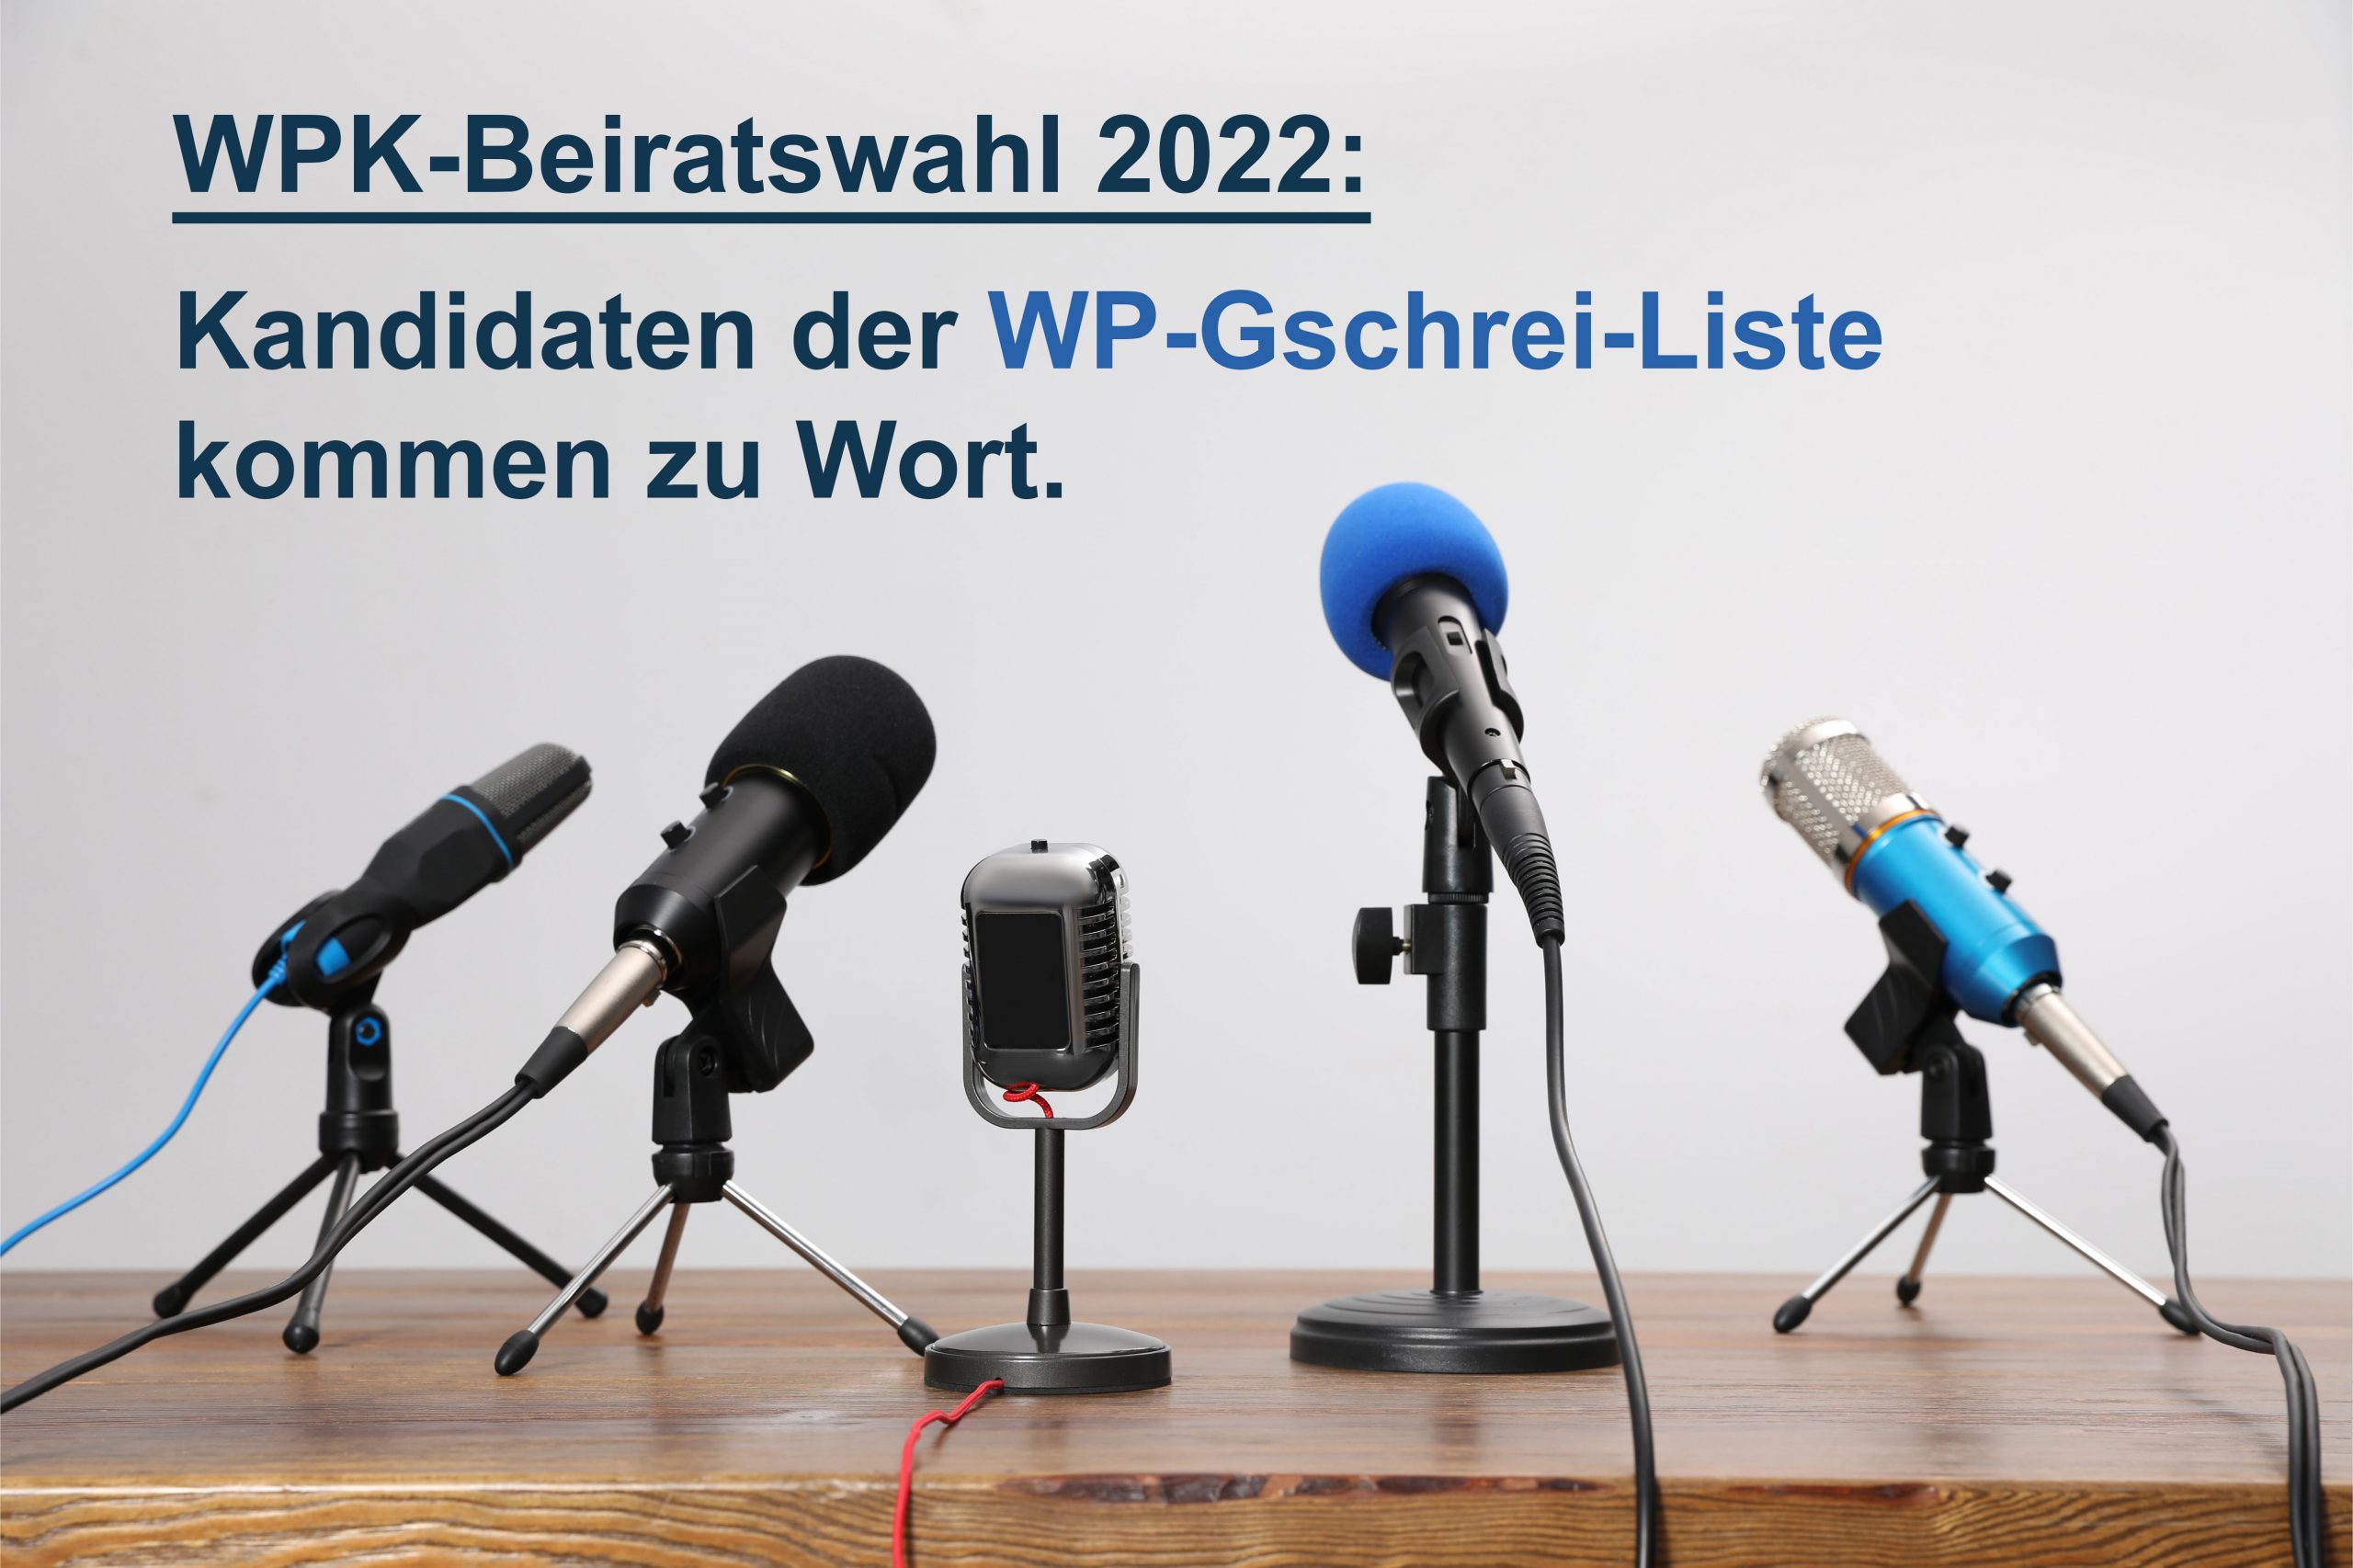 wp.net-Beirats-Kandidaten haben das Wort